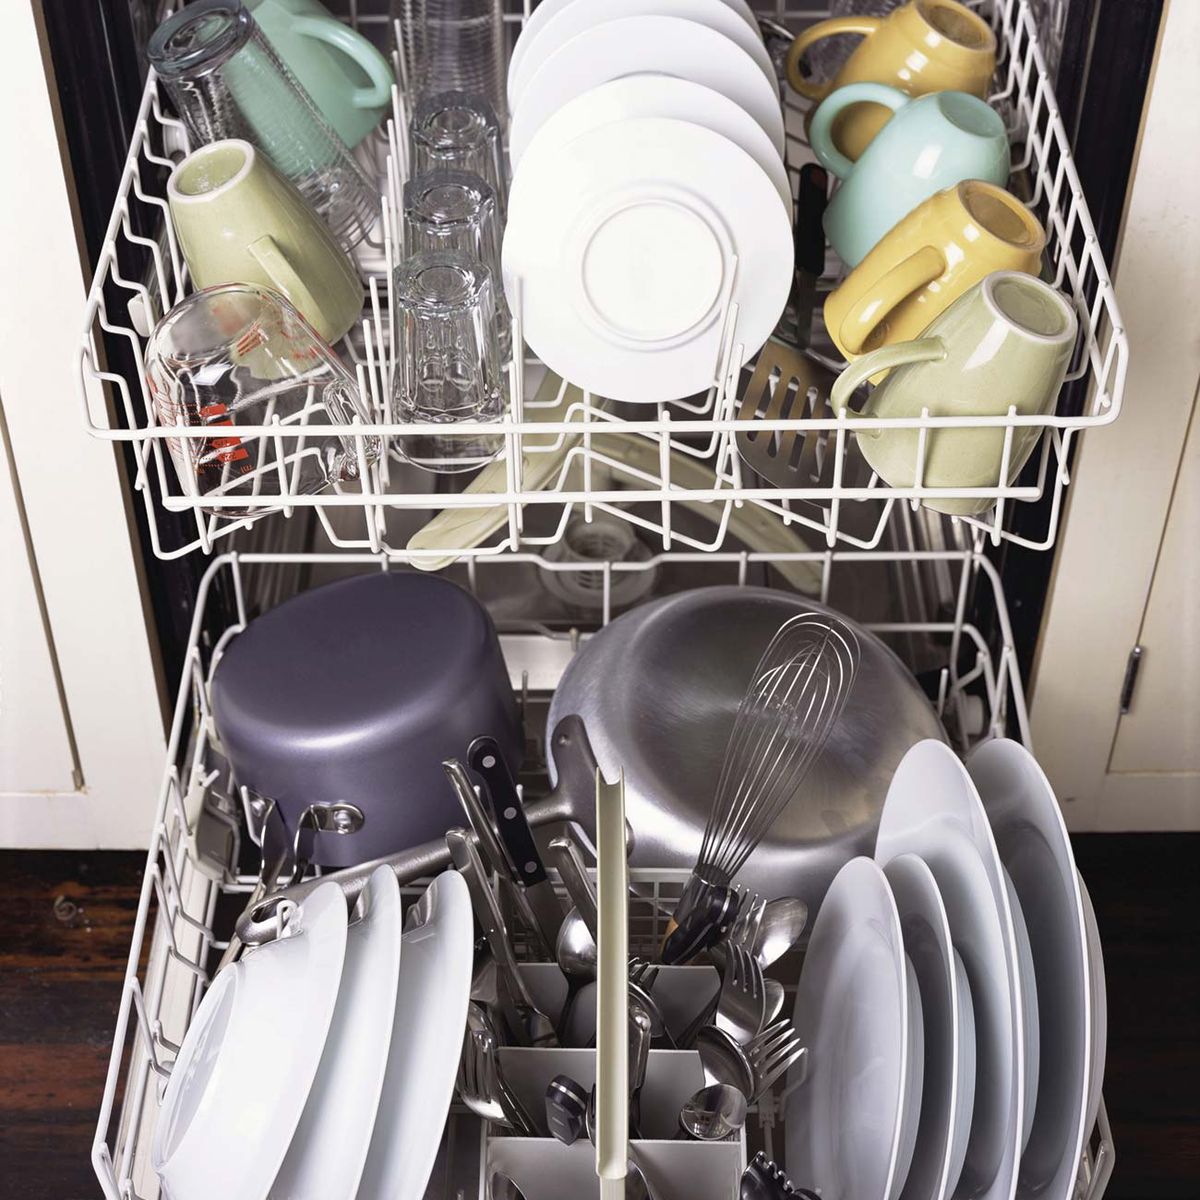 homosexual Ajustarse aparato Por qué no enjuagar los platos antes de poner al lavavajillas